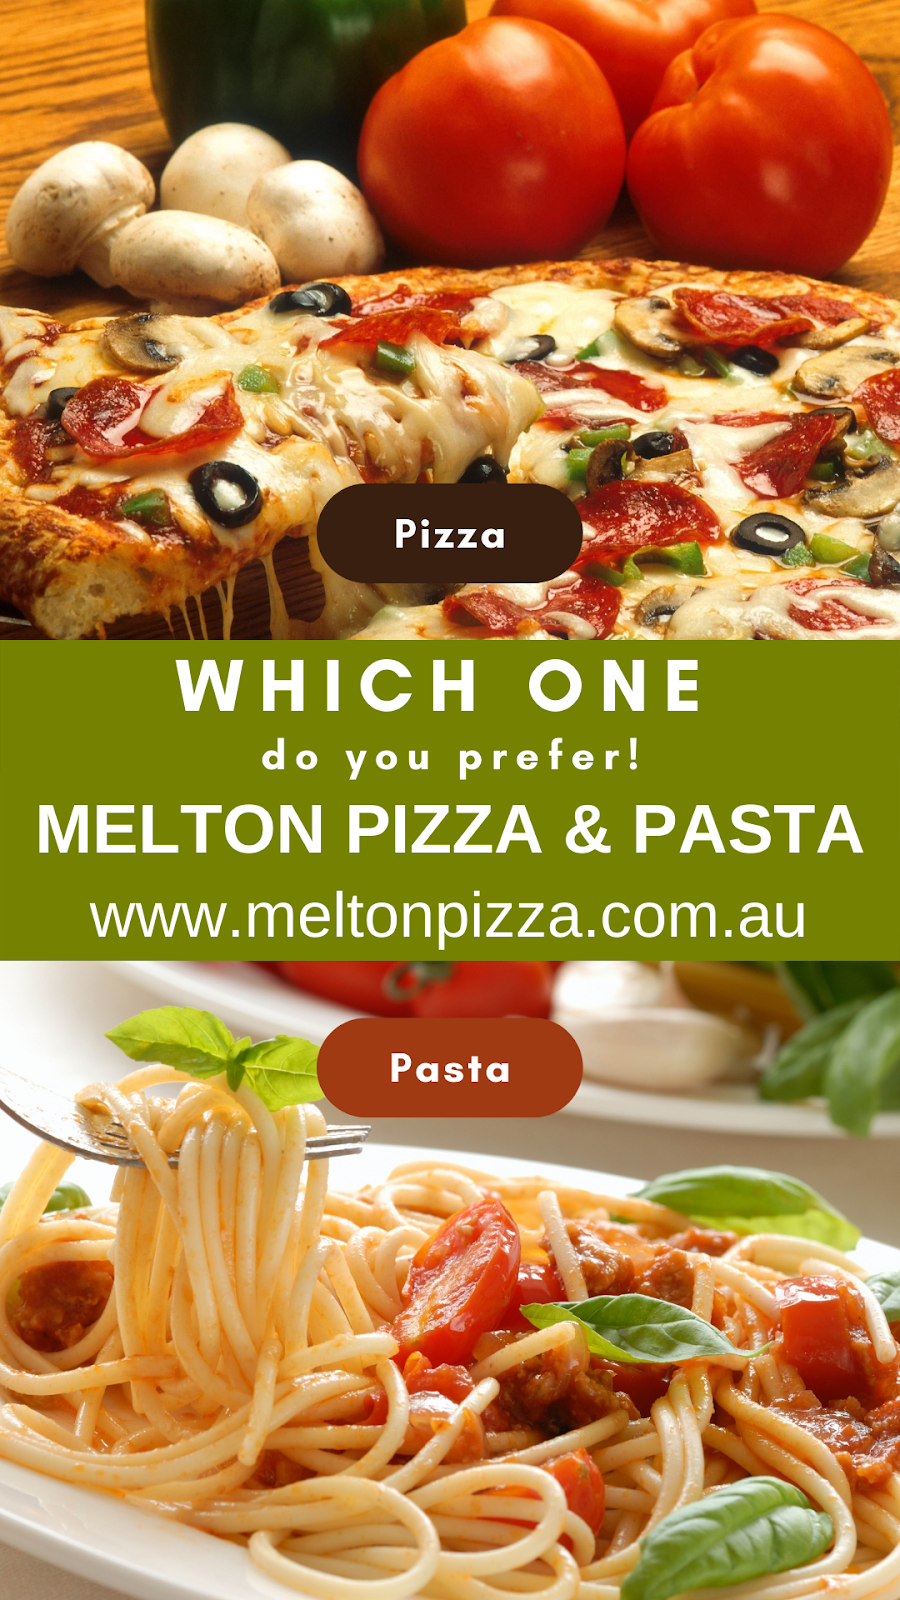 Melton Pizza | restaurant | 9 Exford Rd, Melton South VIC 3338, Australia | 0387160168 OR +61 3 8716 0168